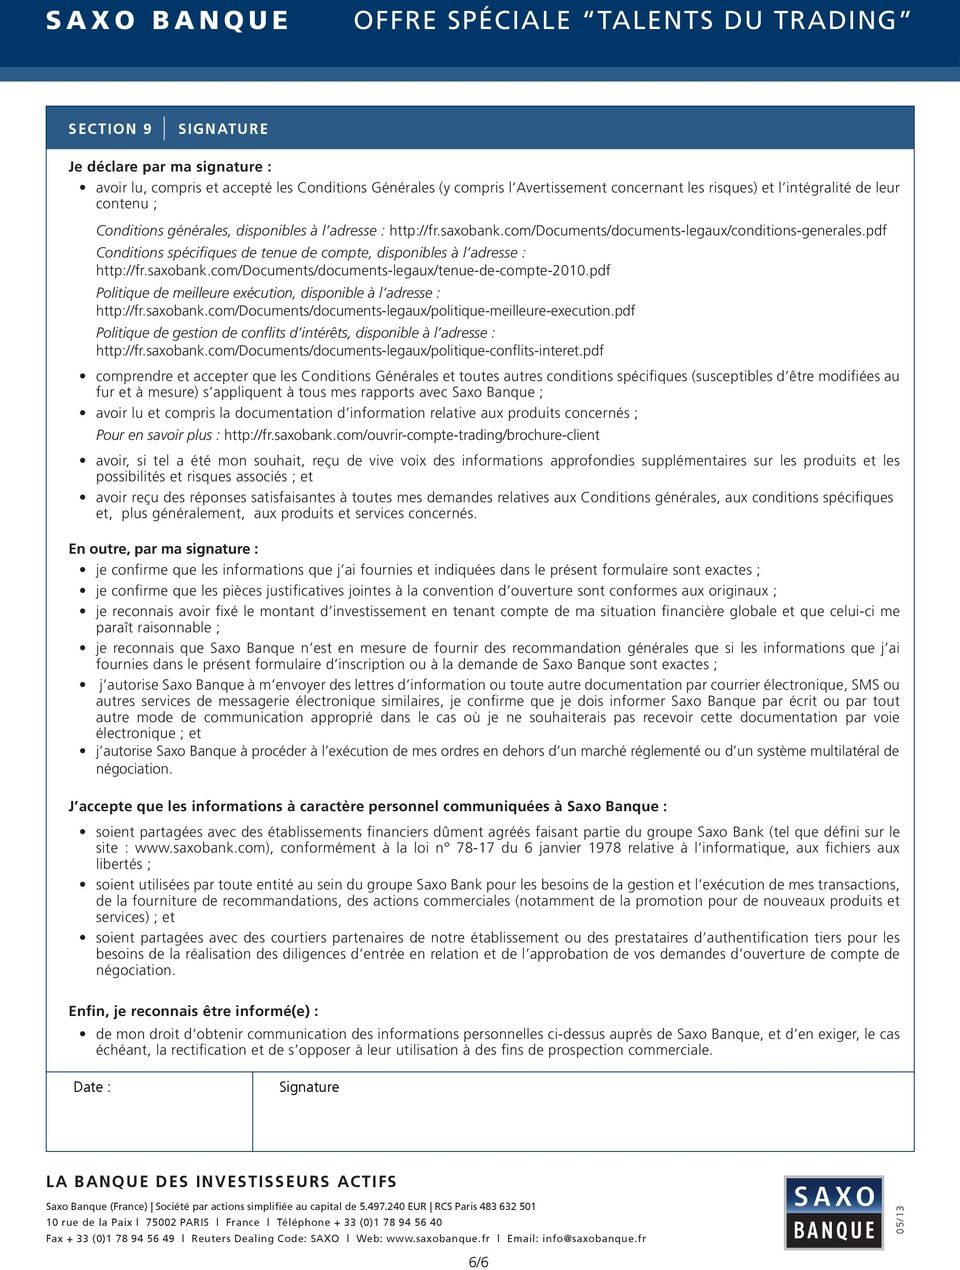 pdf Conditions spécifiques de tenue de compte, disponibles à l adresse : http://fr.saxobank.com/documents/documents-legaux/tenue-de-compte-2010.